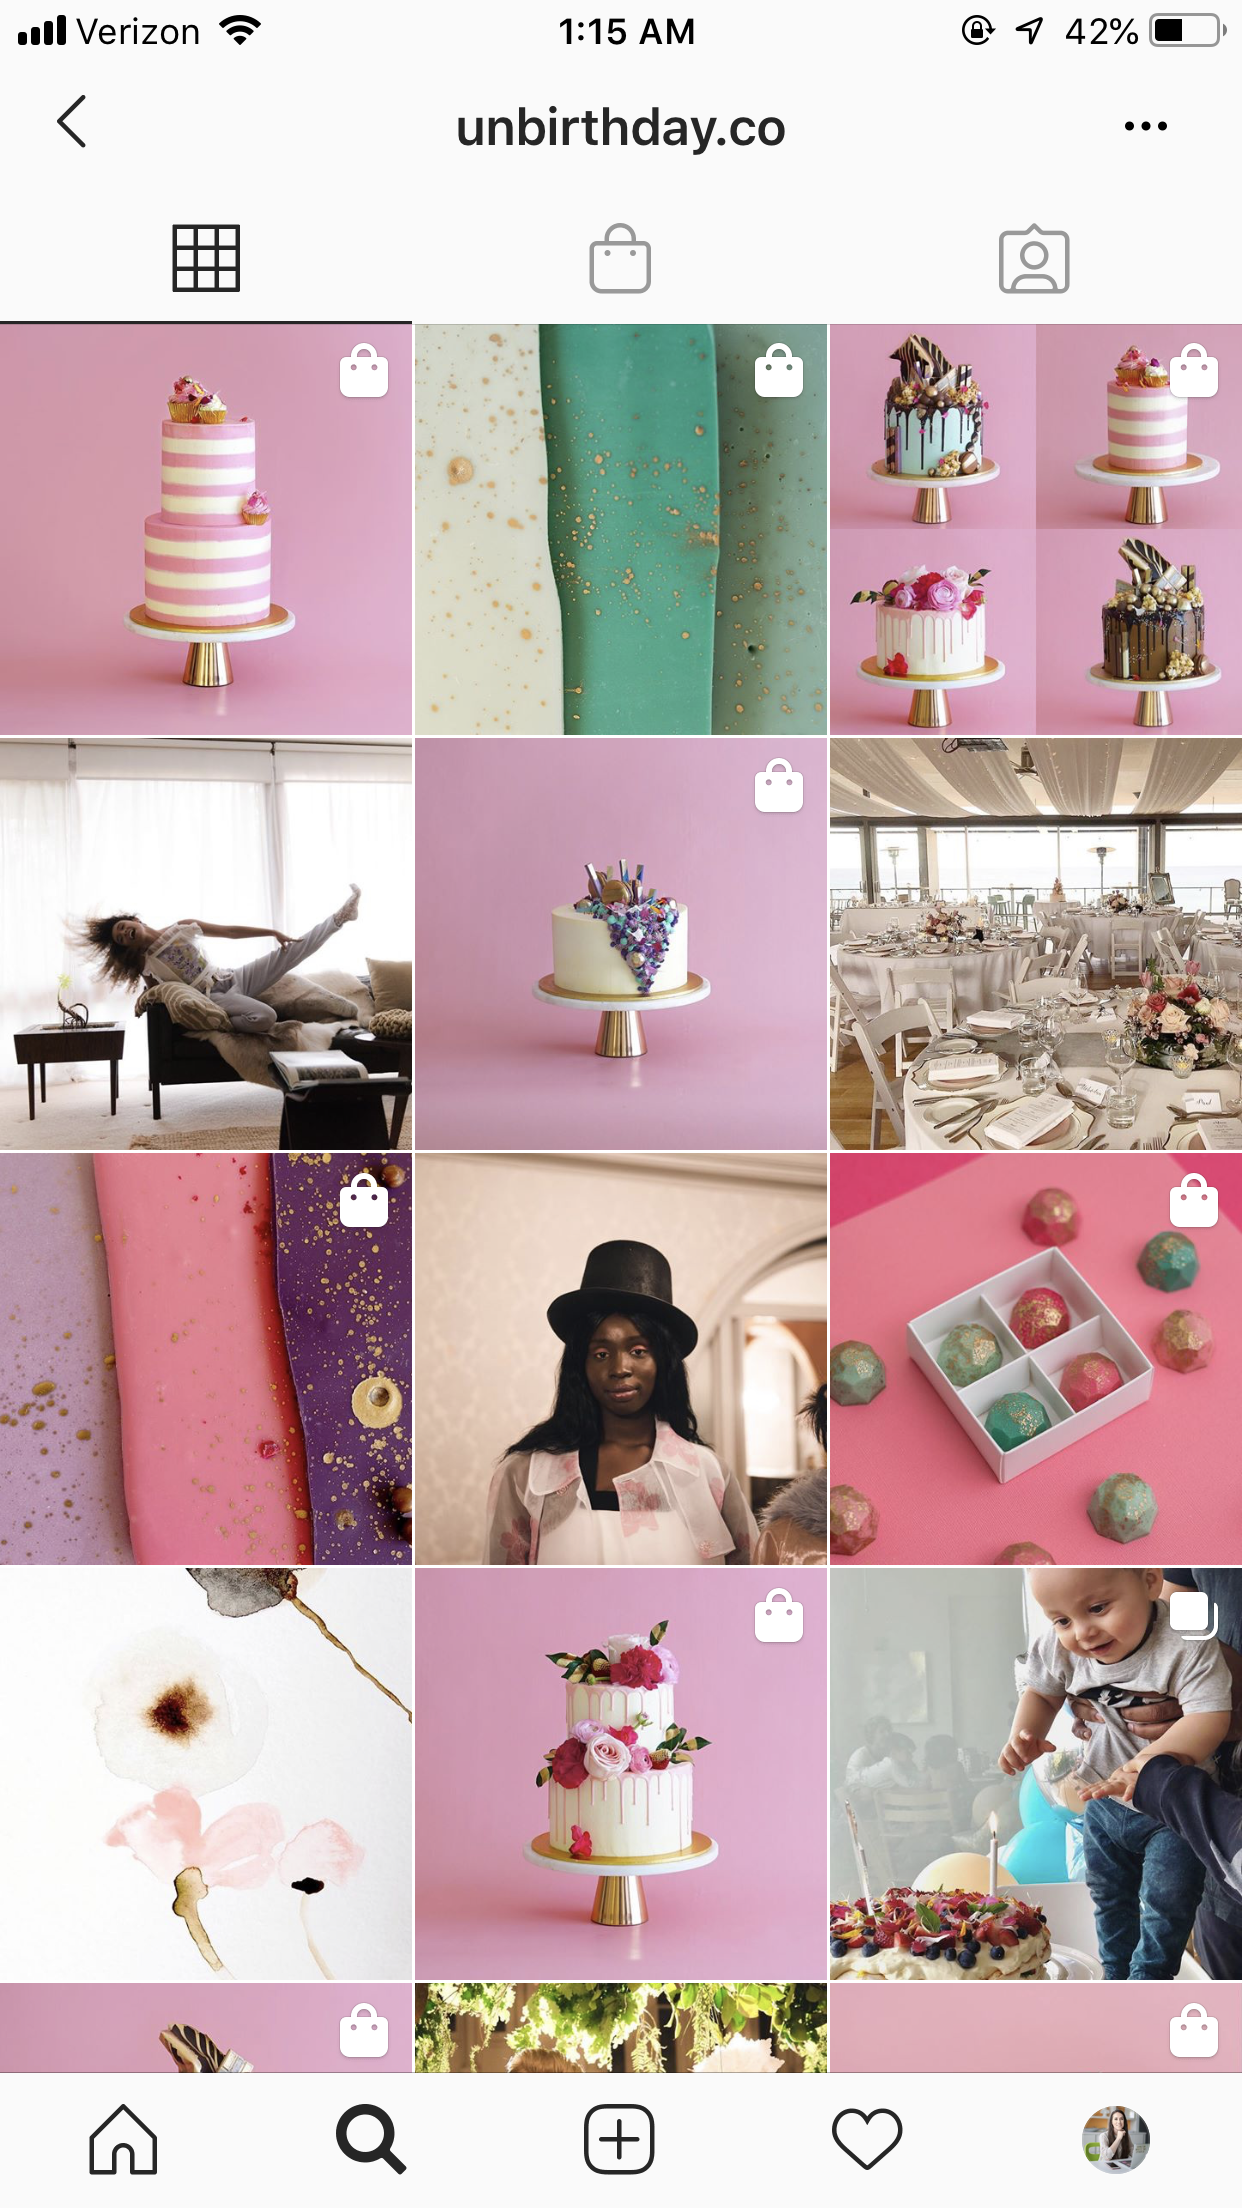 Unbirthday en Instagram - las mejores marcas a seguir